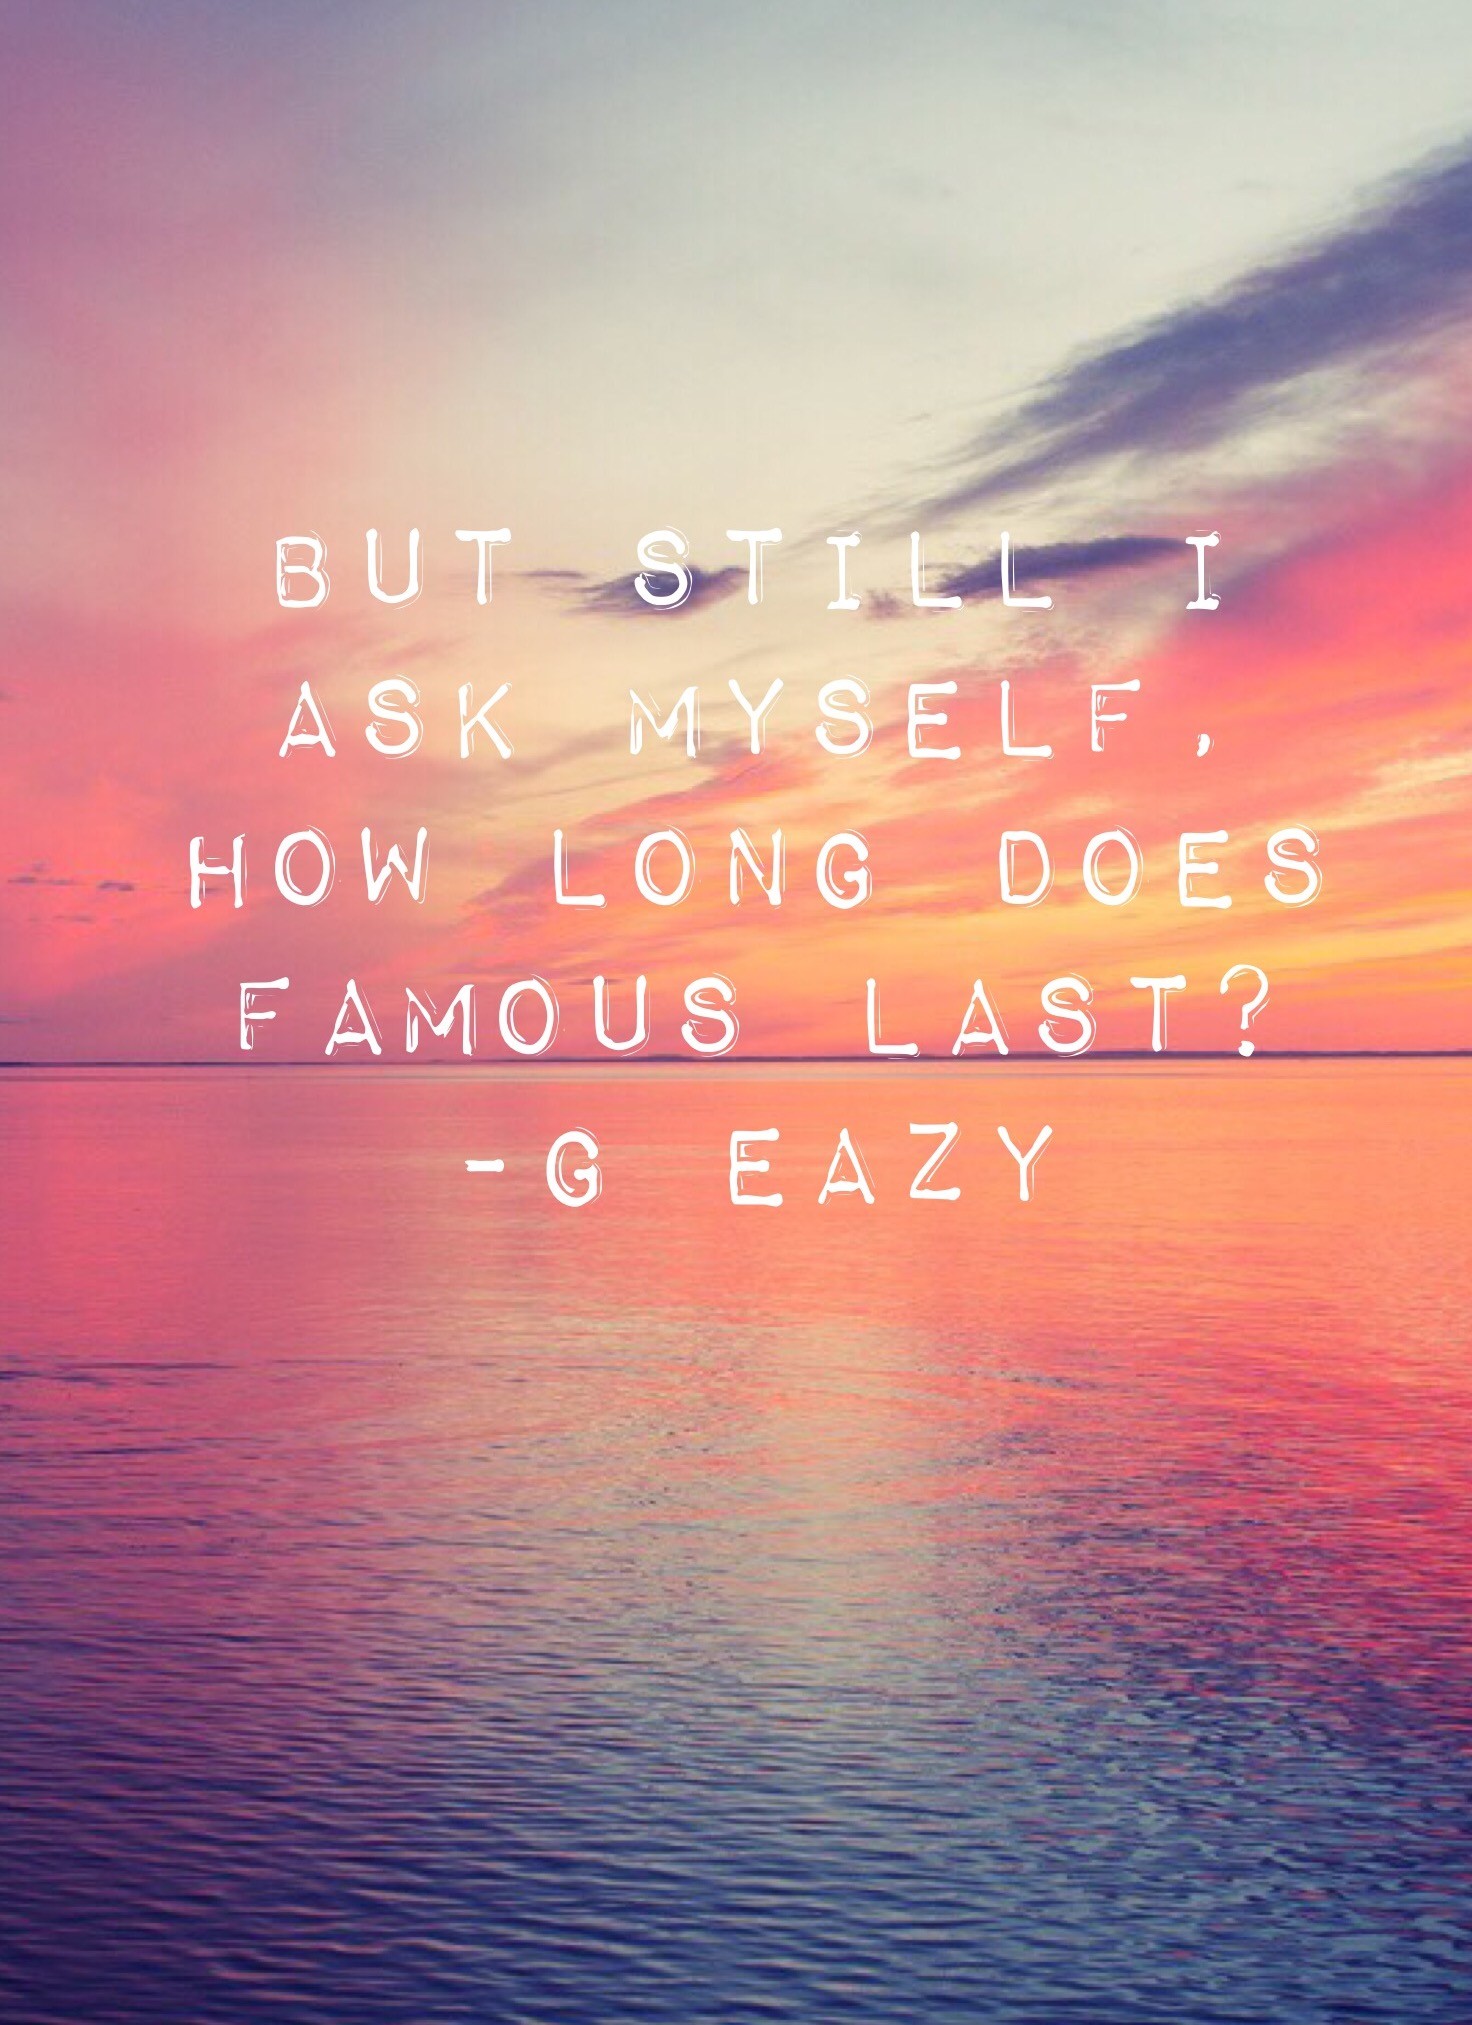 G Eazy